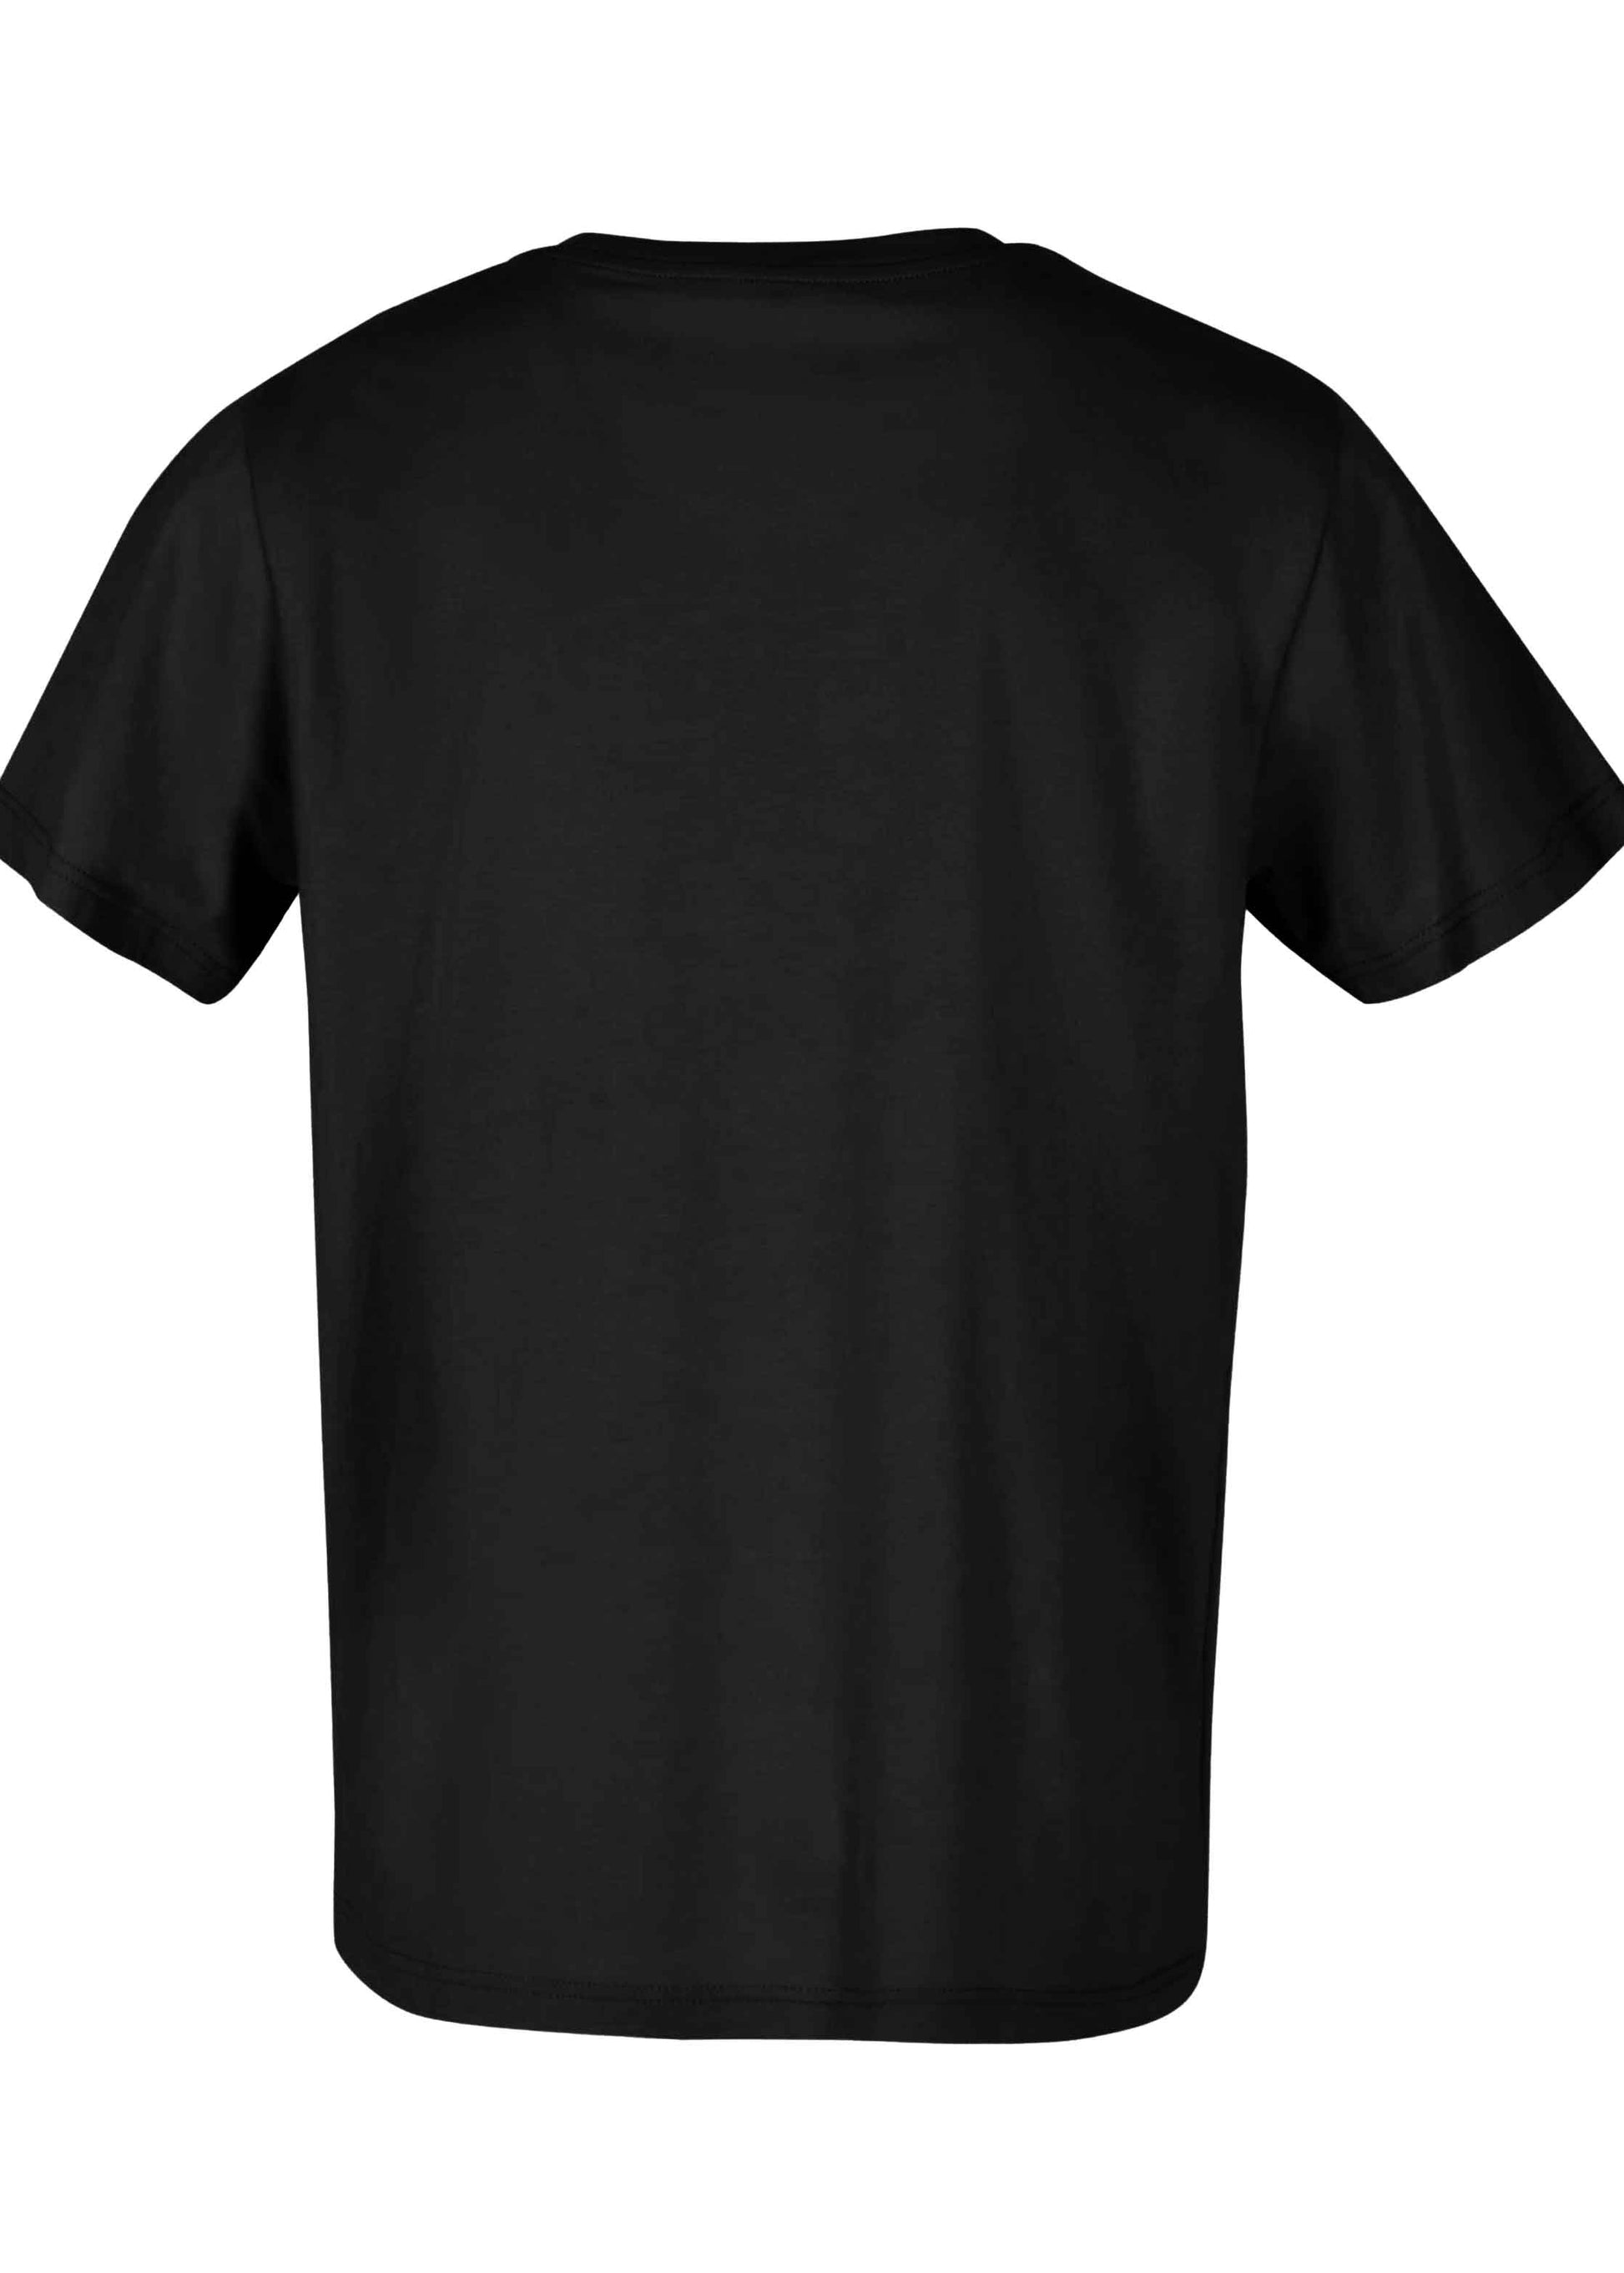 Schwarzes T-Shirt Rückansicht